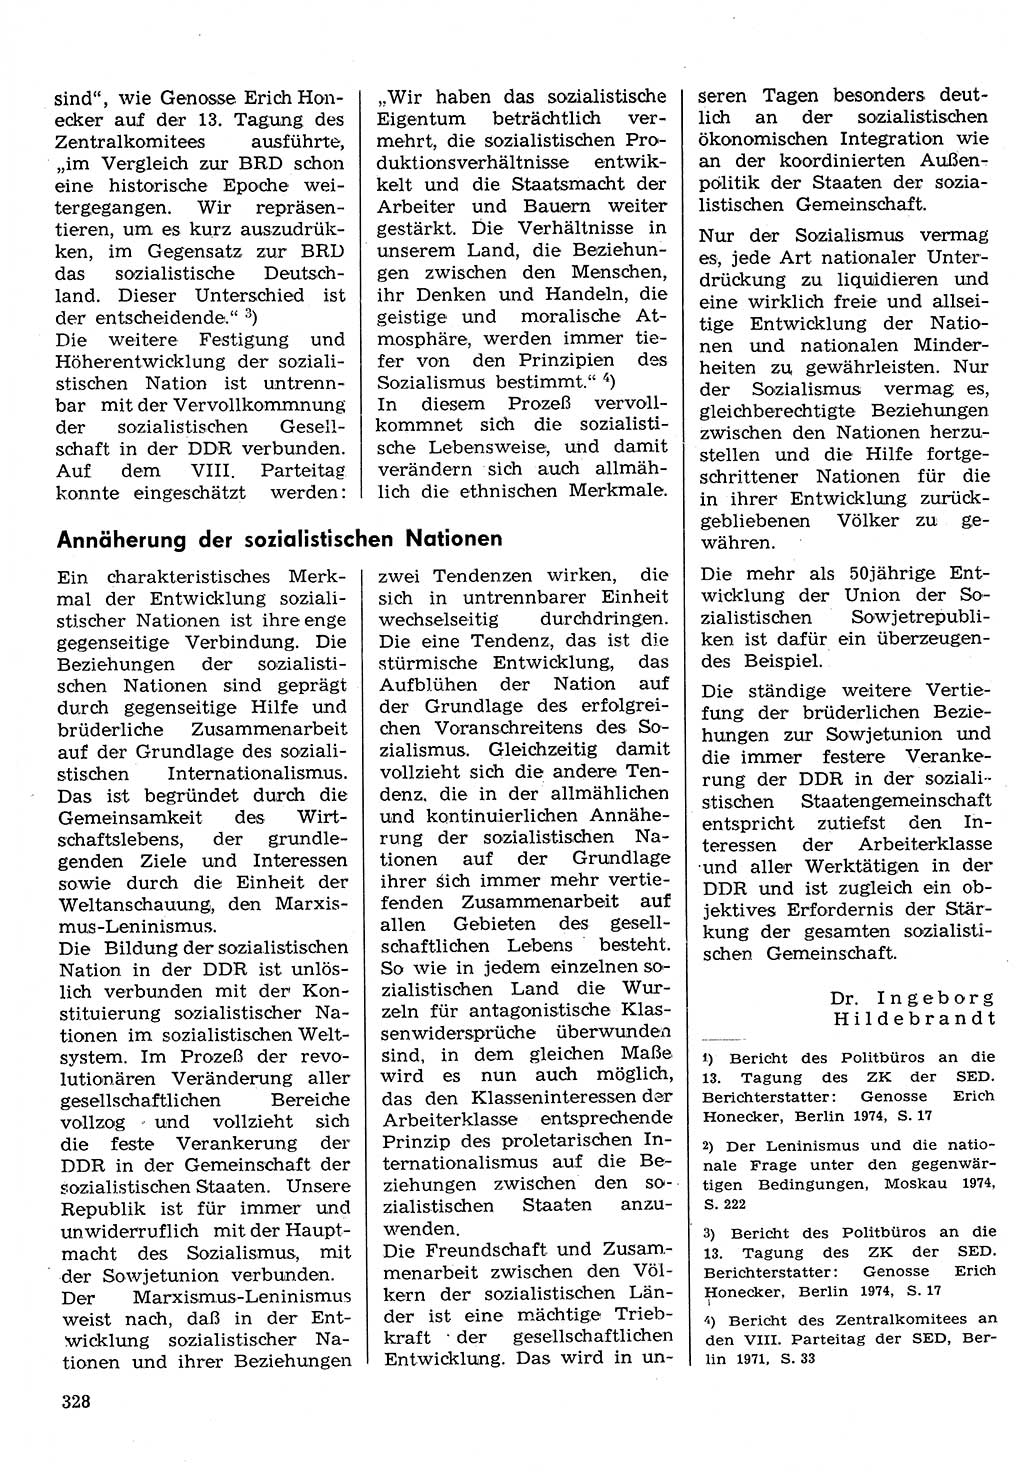 Neuer Weg (NW), Organ des Zentralkomitees (ZK) der SED (Sozialistische Einheitspartei Deutschlands) für Fragen des Parteilebens, 30. Jahrgang [Deutsche Demokratische Republik (DDR)] 1975, Seite 328 (NW ZK SED DDR 1975, S. 328)